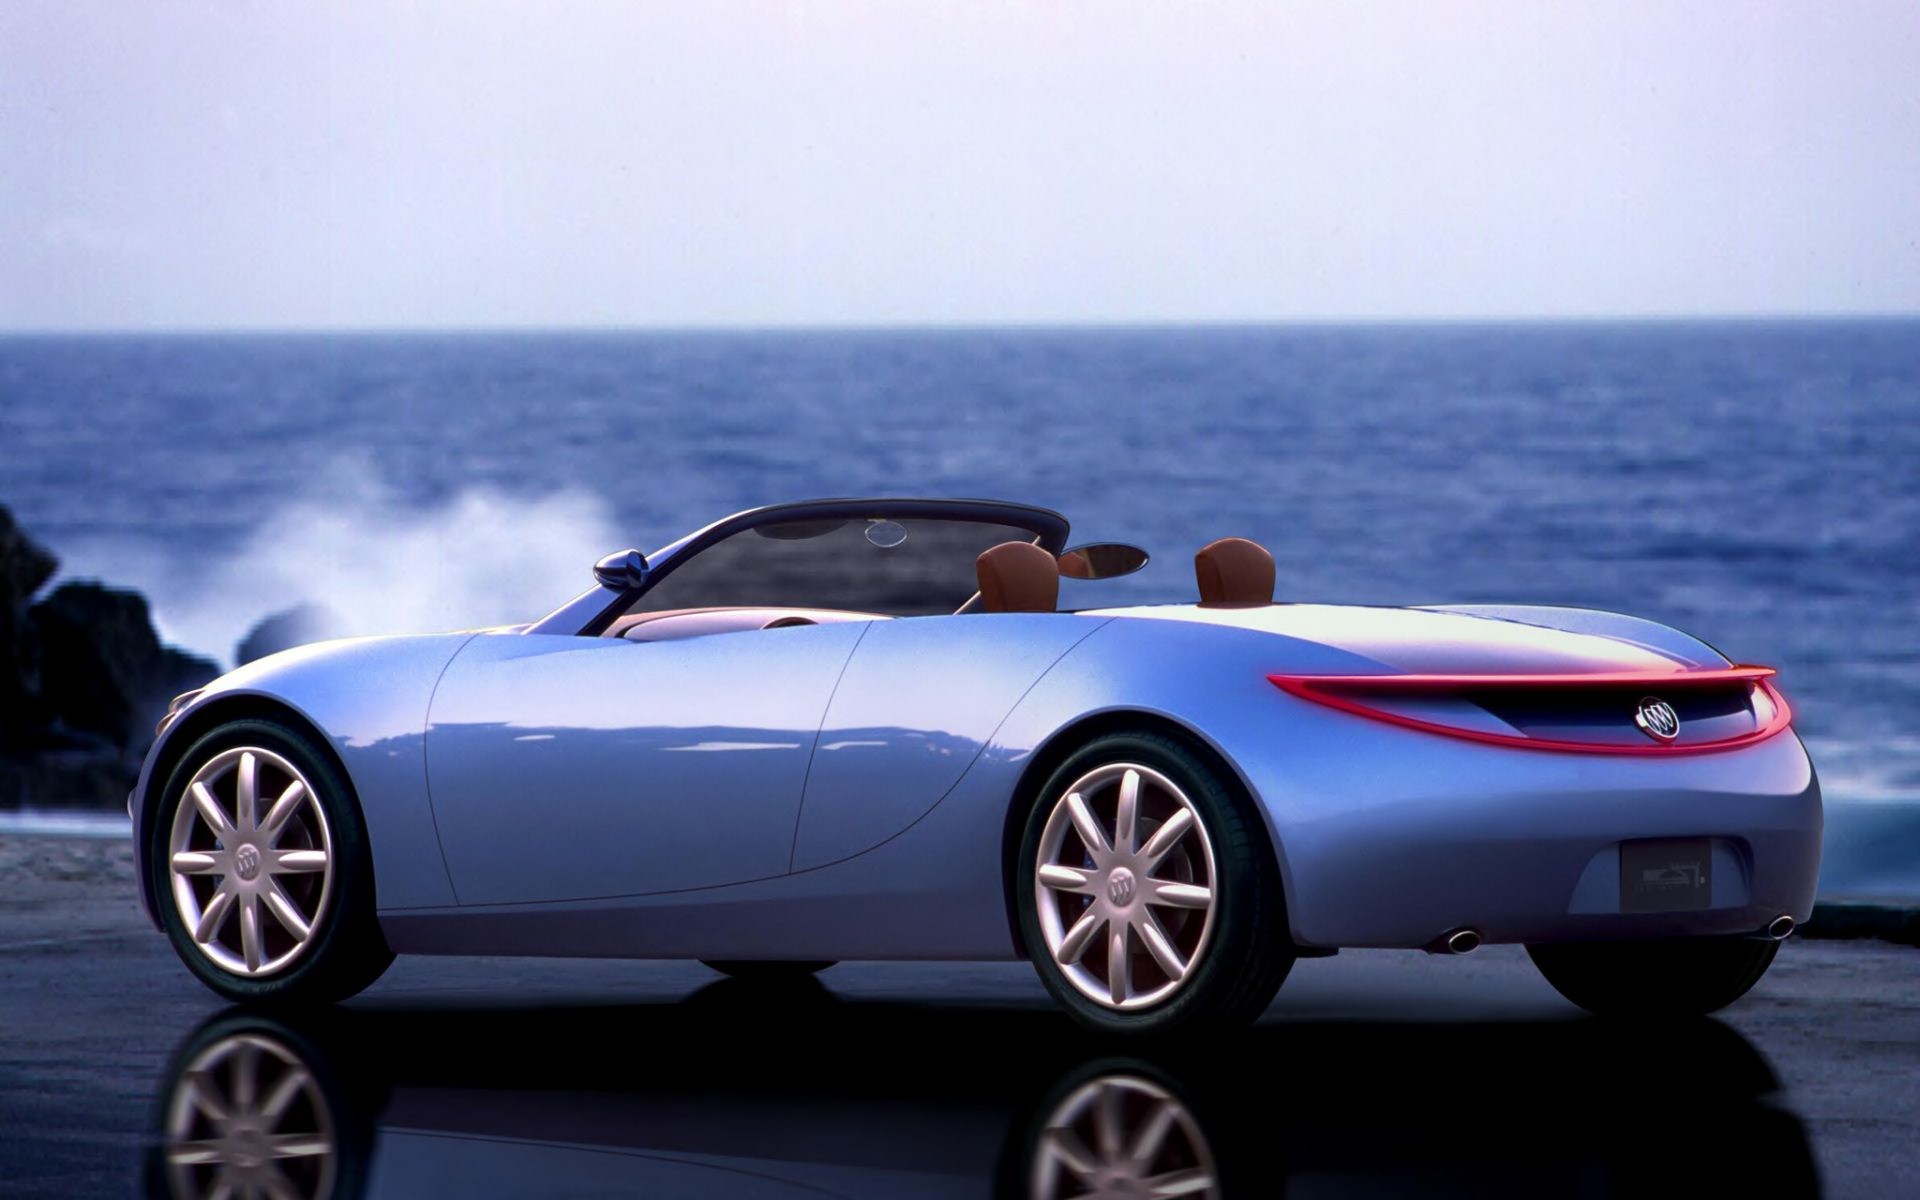 Descarga gratuita de fondo de pantalla para móvil de 2001 Buick Bengal Concepto Roadster, Buick, Vehículos.